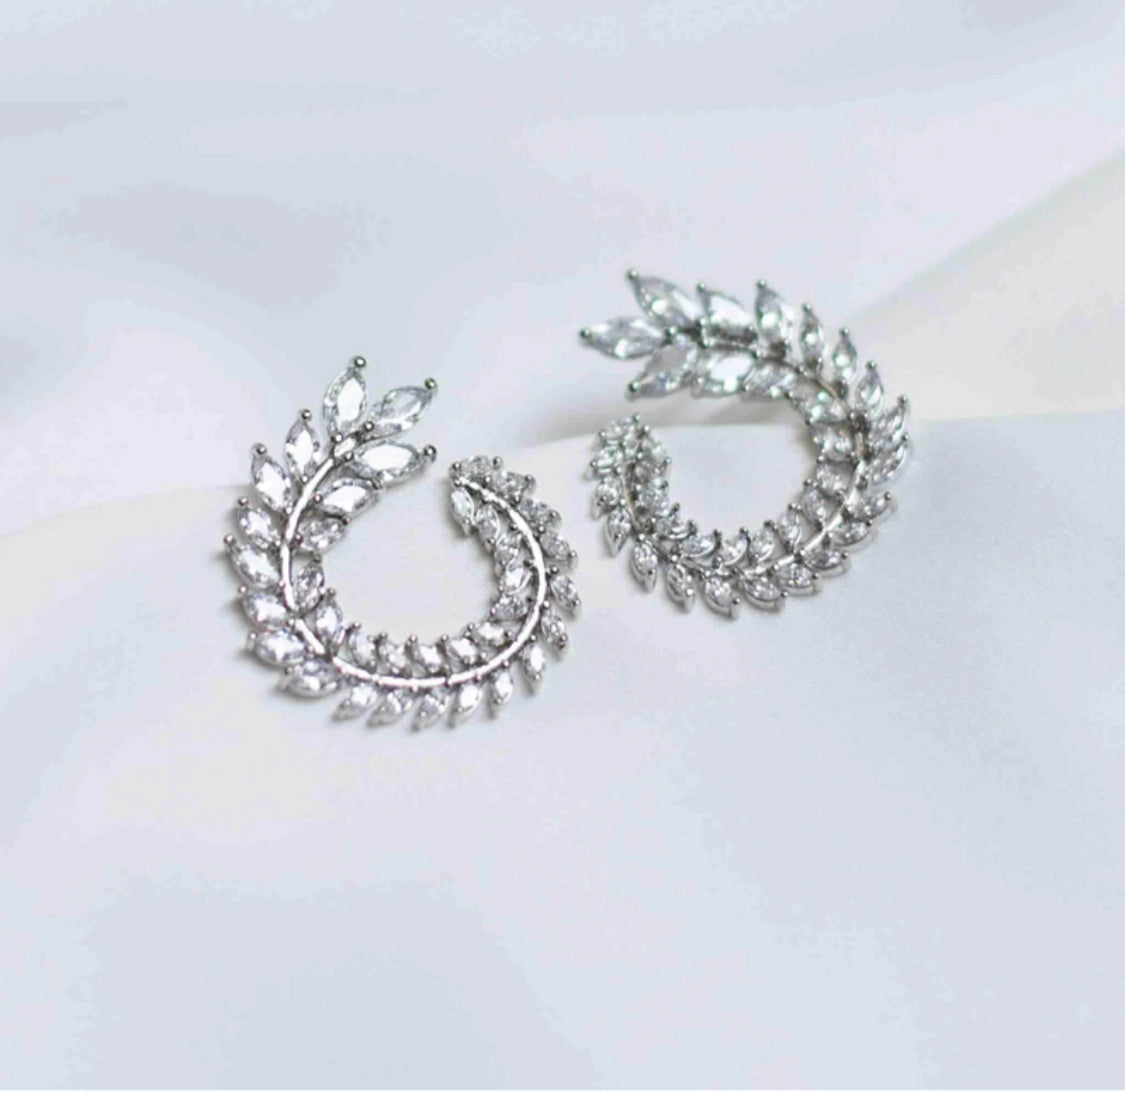 Silver Swirl Earrings